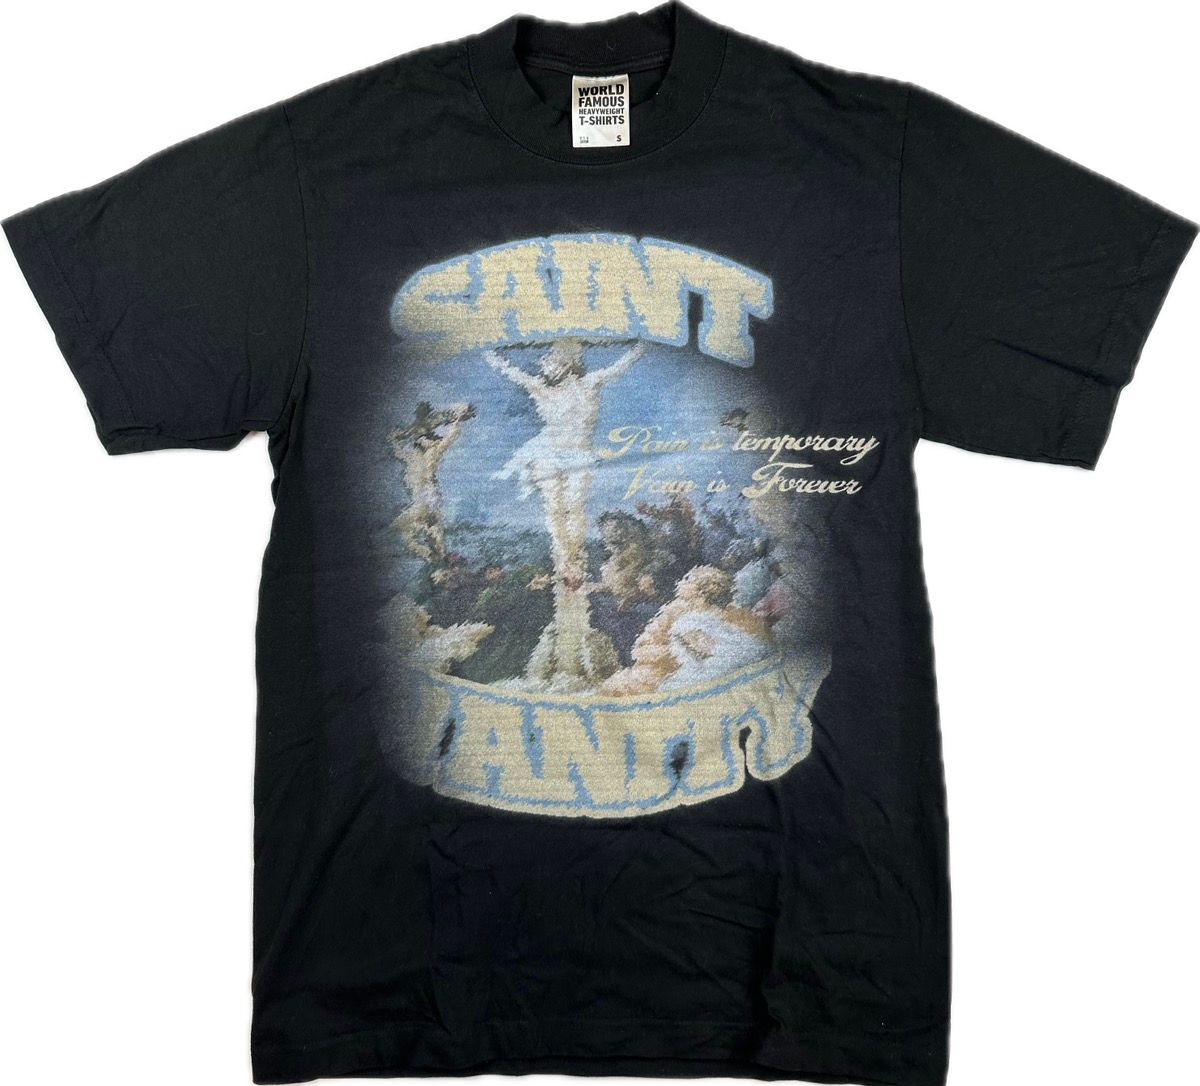 Pre-owned Vintage Saint Vanity T-shirt In Black